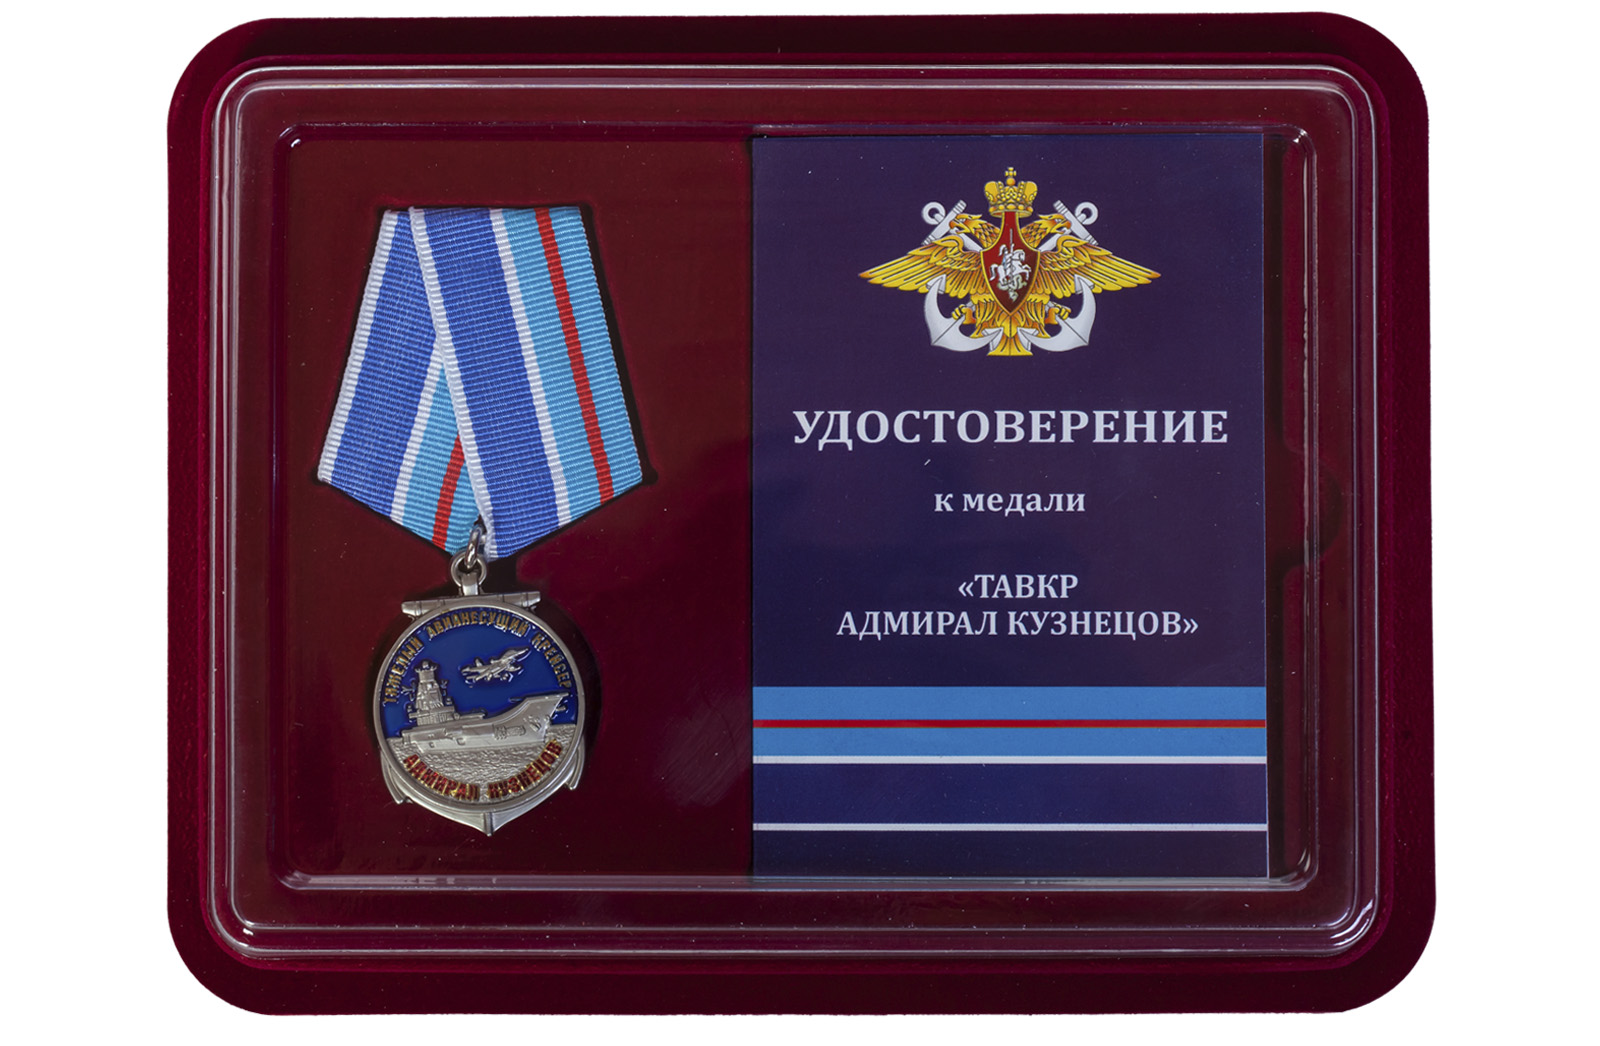 Купить медаль ТАВКР Адмирал Кузнецов по лучшей цене